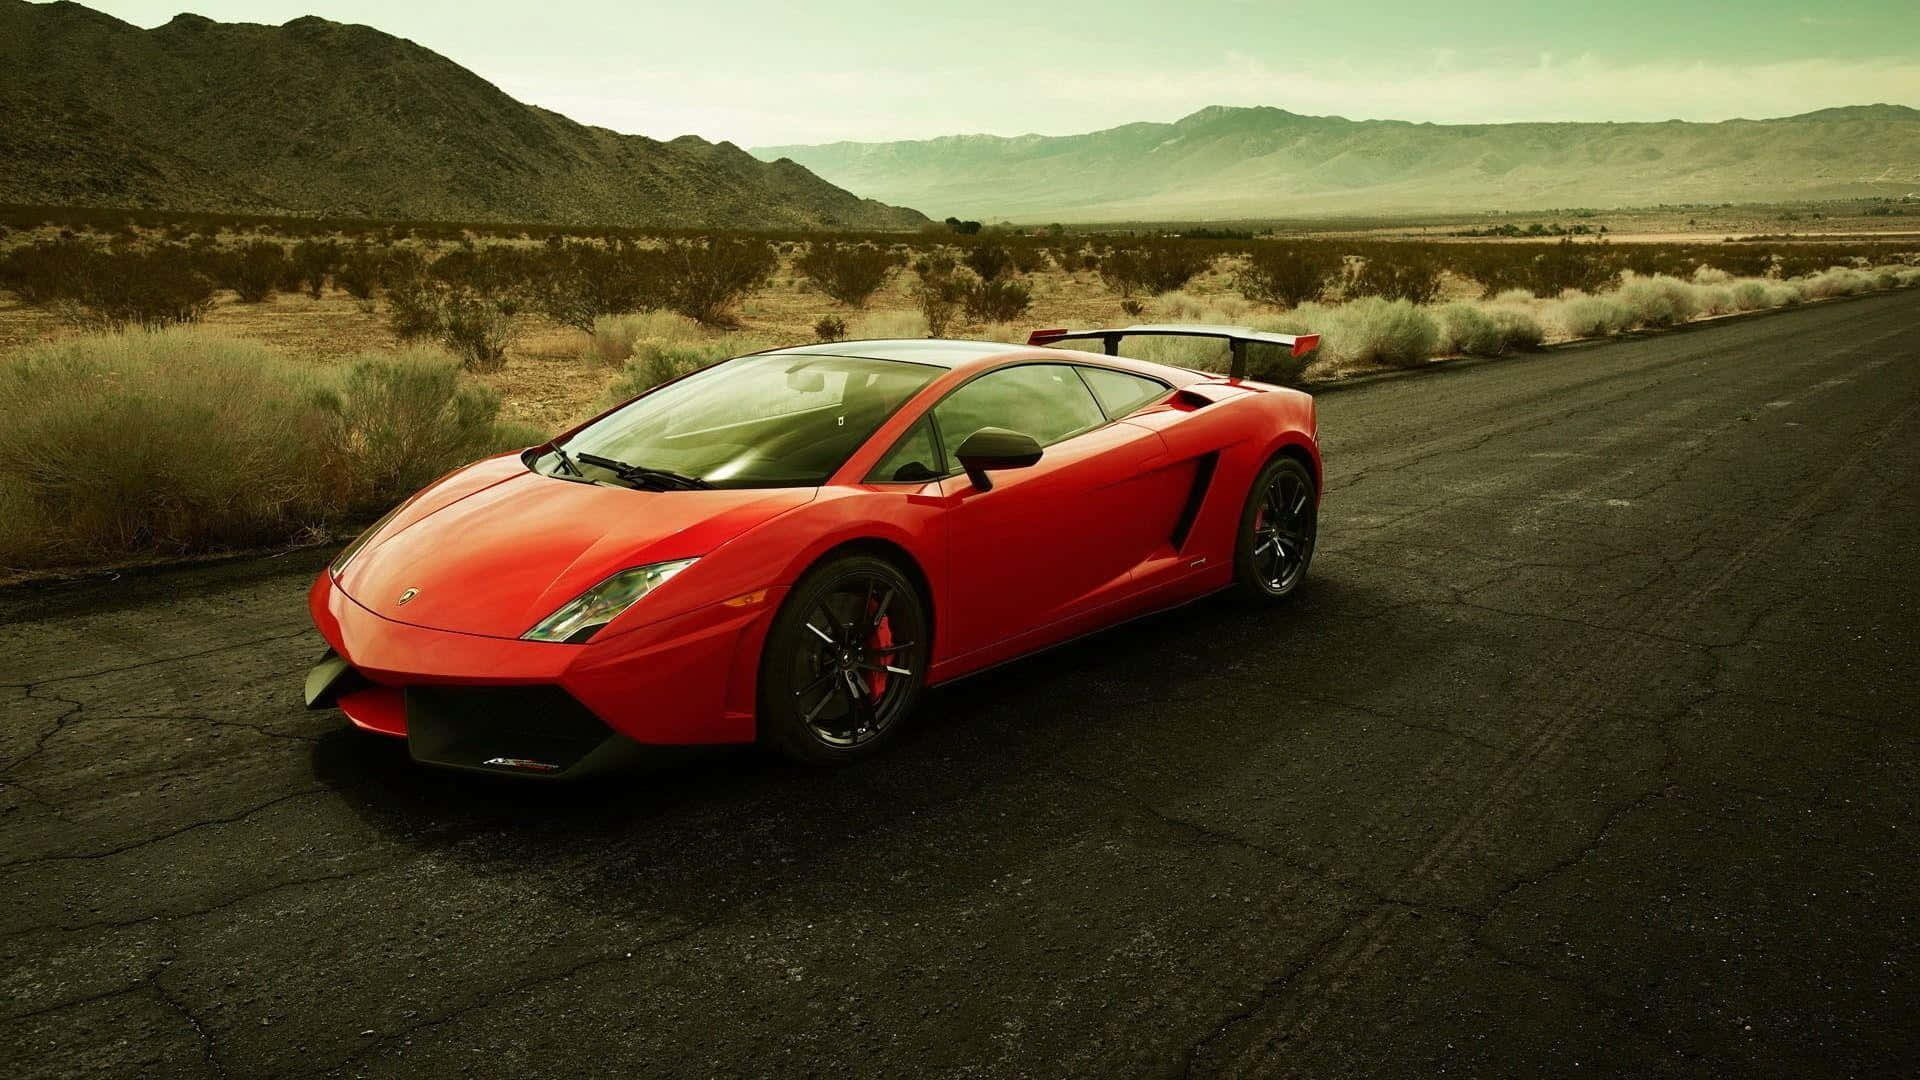 Stunning Lamborghini Gallardo in Motion Wallpaper